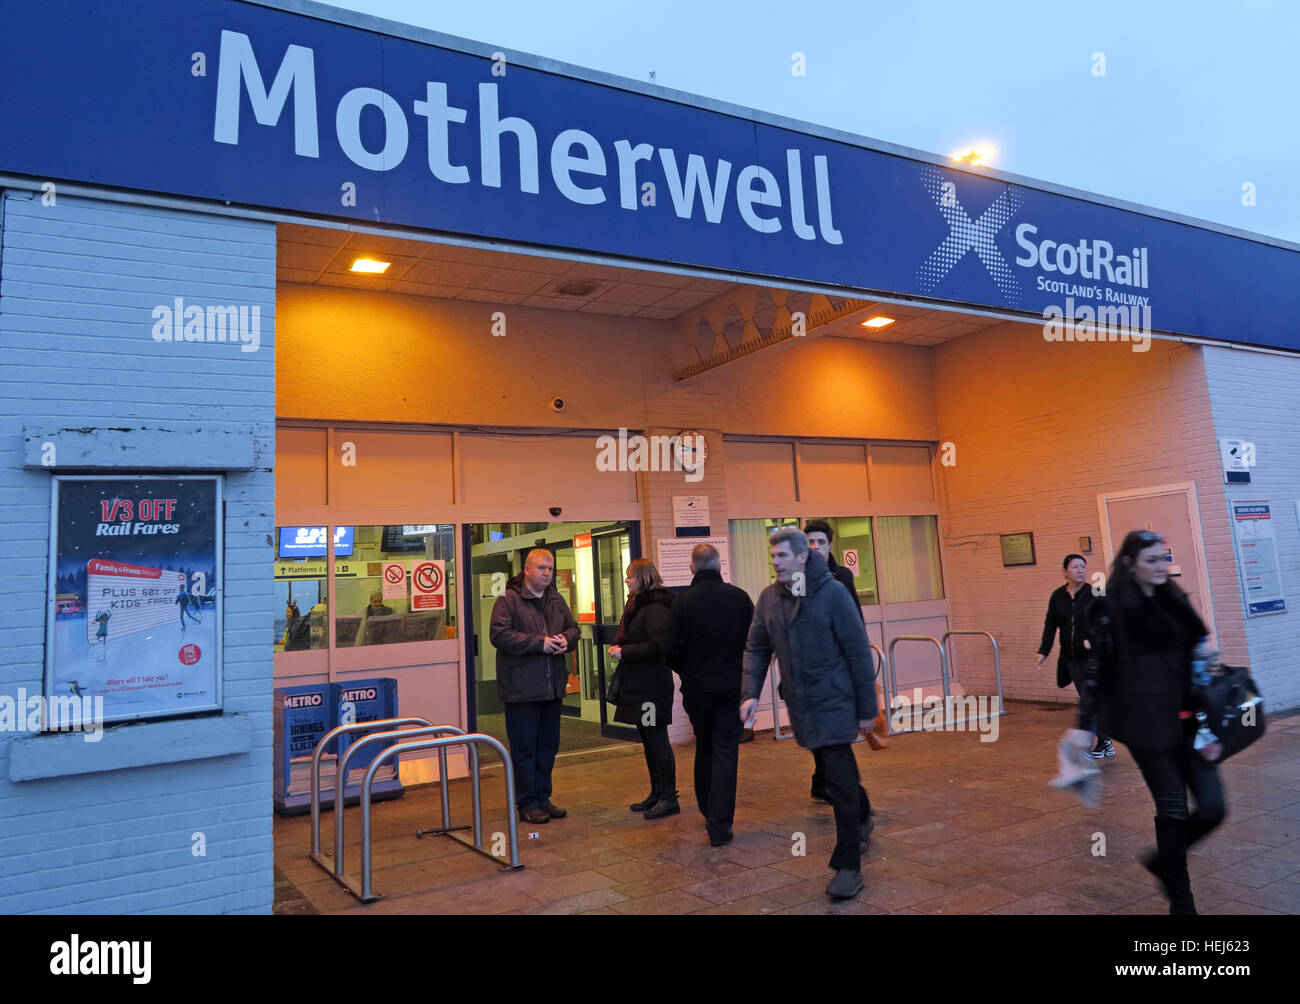 Estación de tren ScotRail Motherwell,North Lanarkshire, Escocia, Reino Unido al atardecer Foto de stock